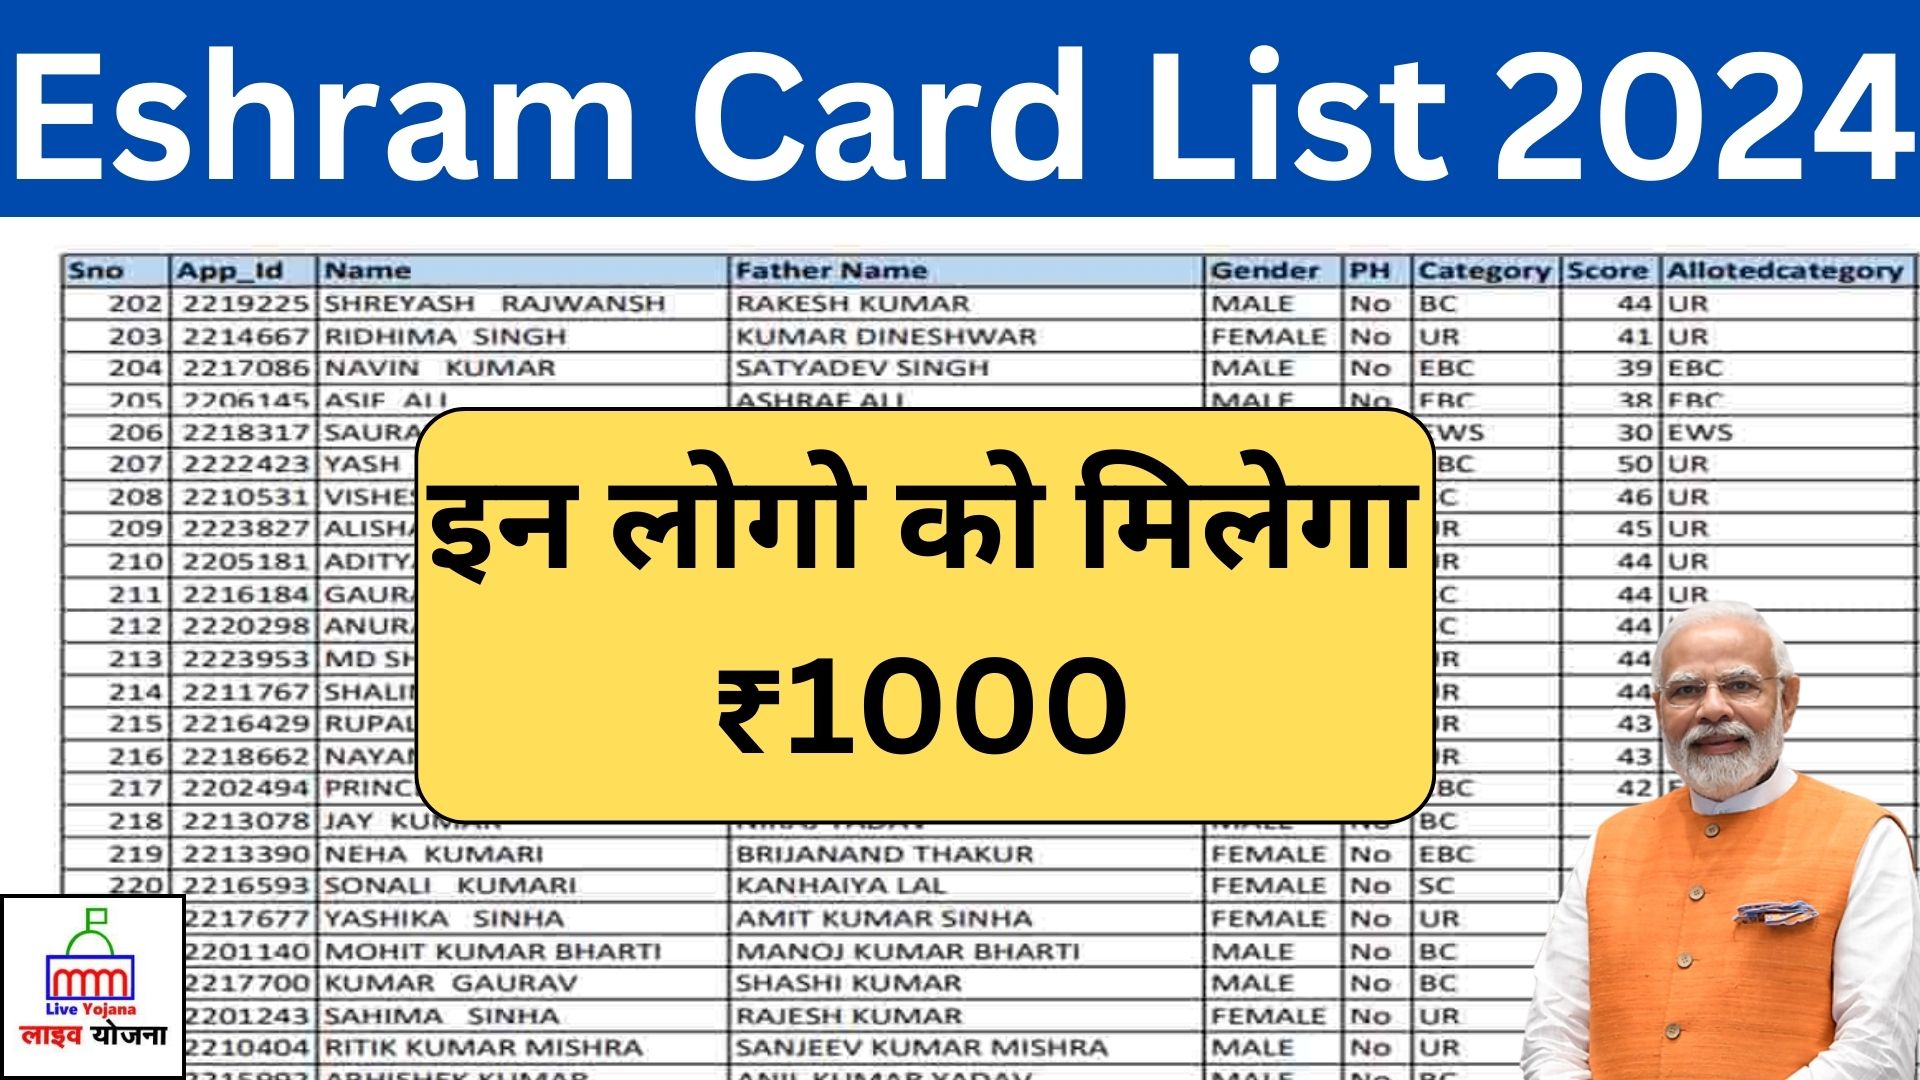 E shram Card List 2024 E Shram Card ई-श्रम कार्ड लिस्ट ई-श्रम कार्ड  1000 रूपए की नई क़िस्त जारी, इस लिस्ट में नाम है तो आ गया पैसा